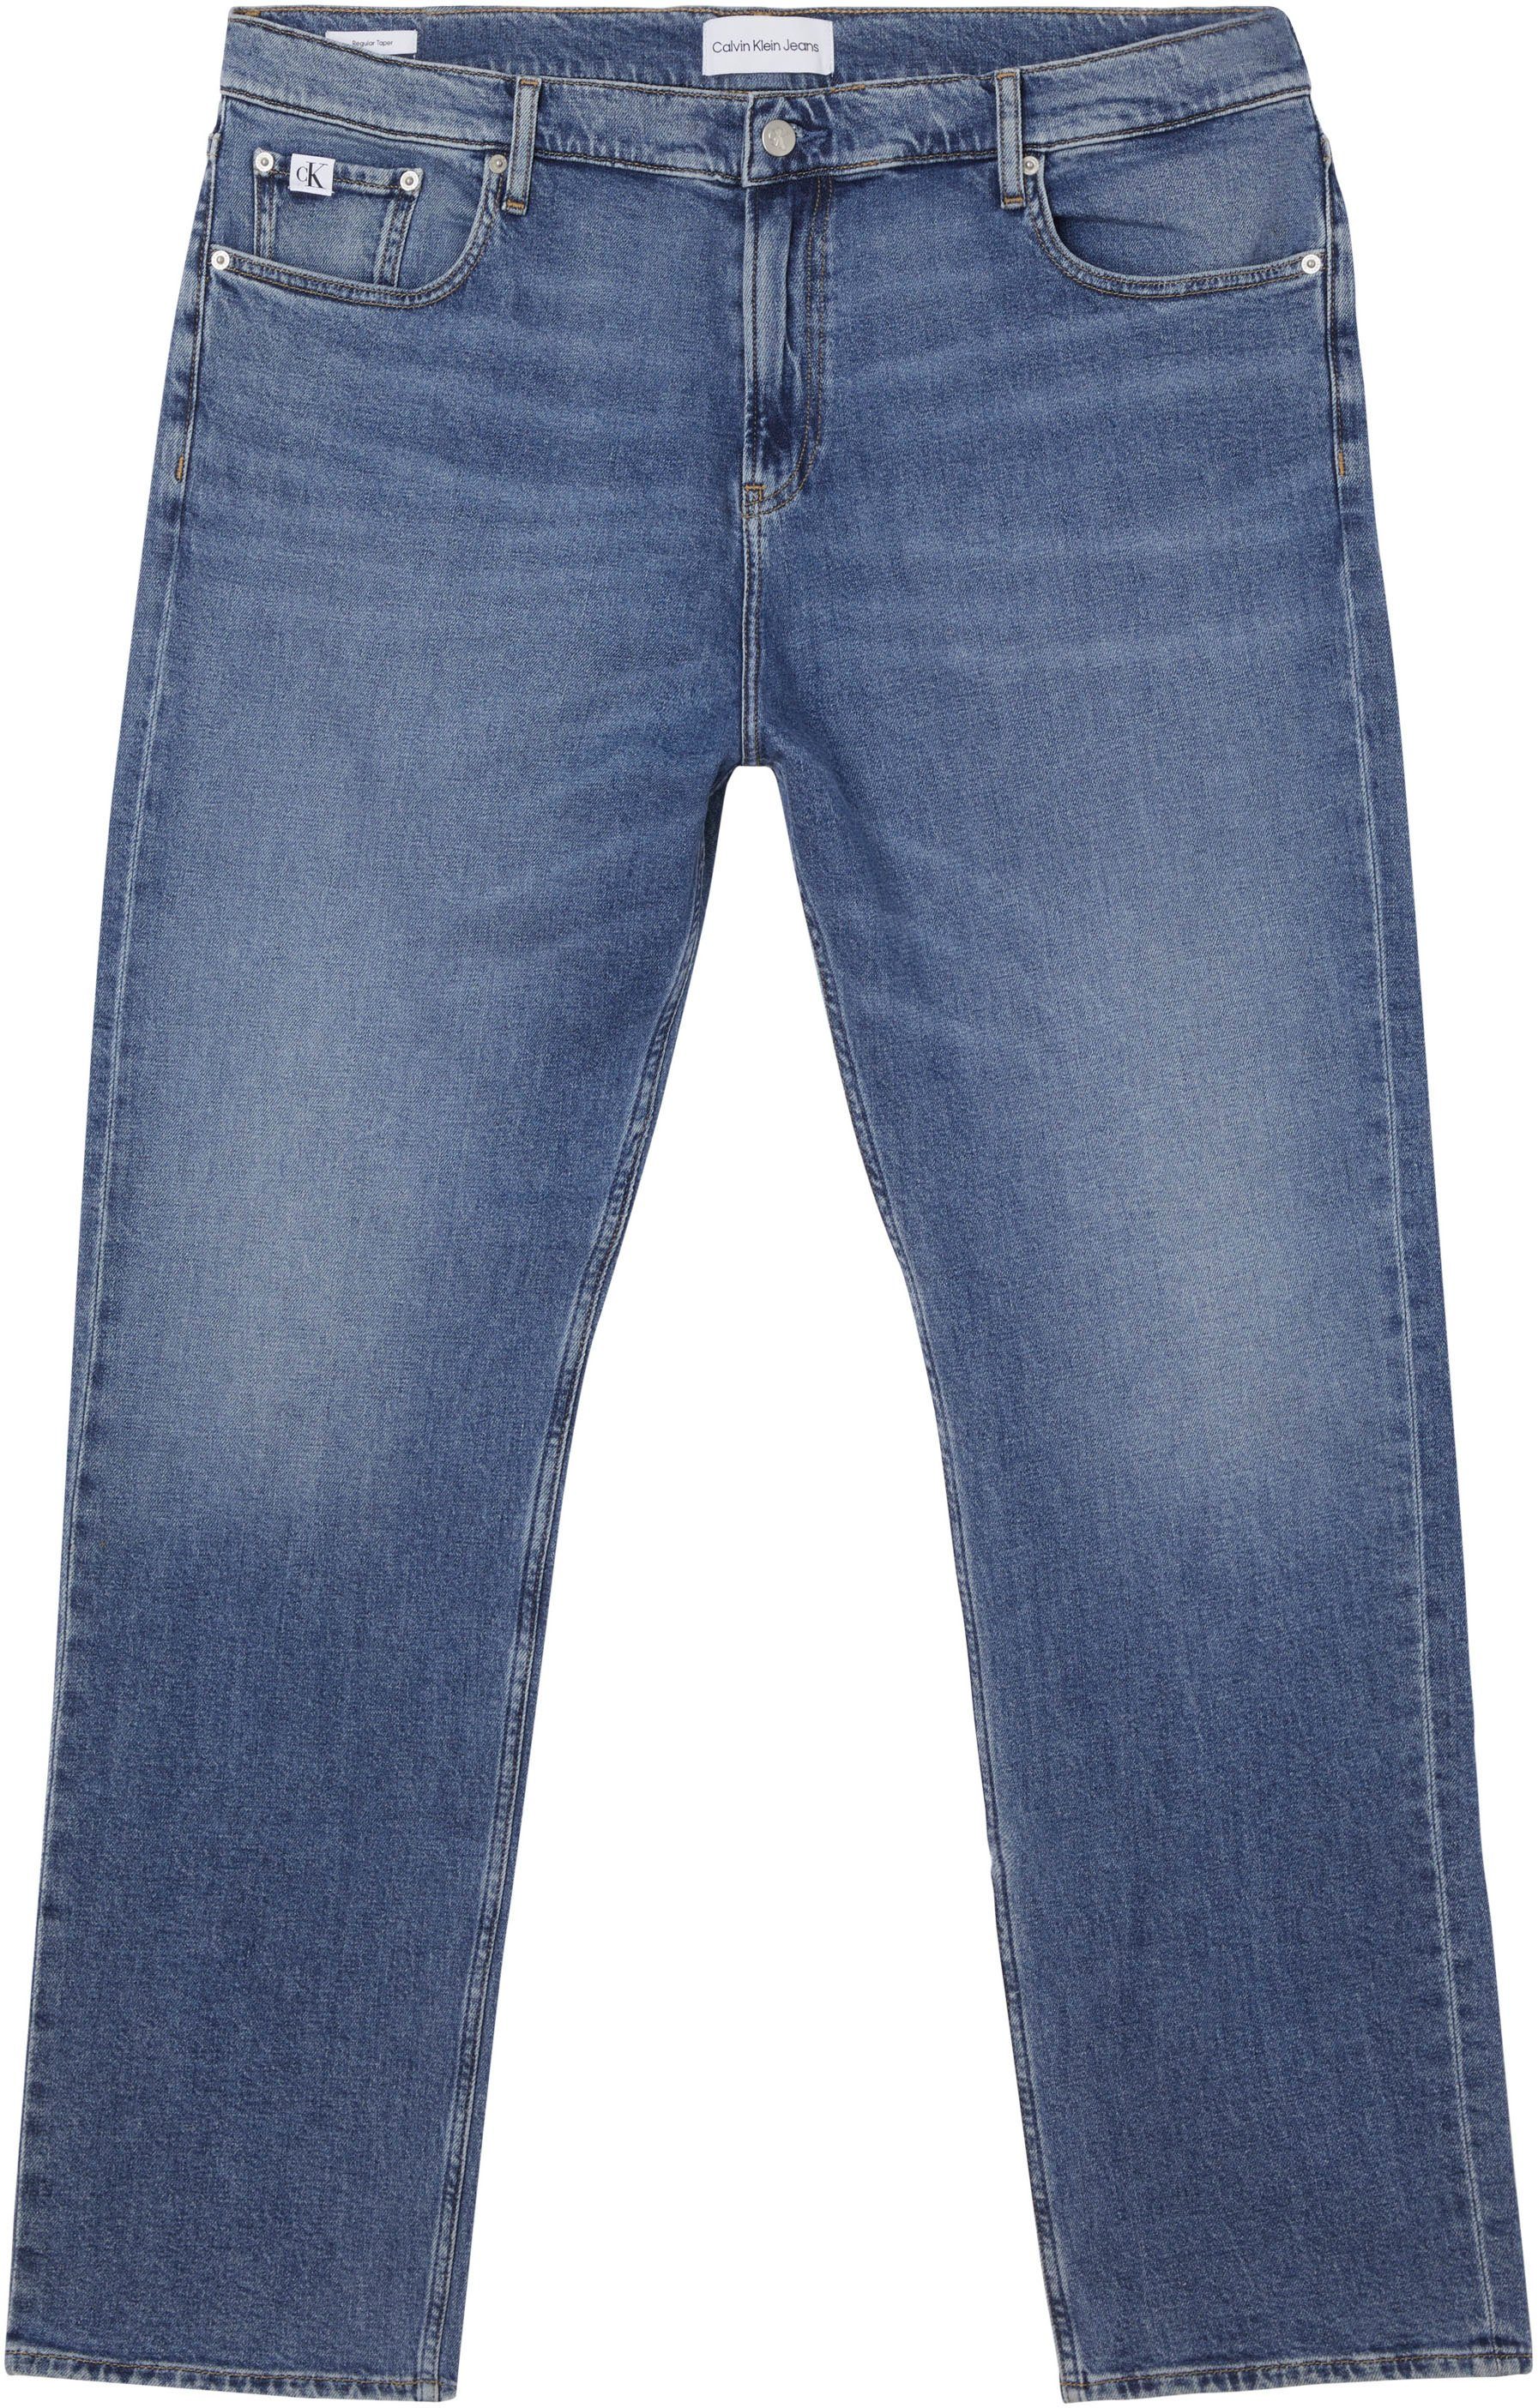 TAPER Weiten Jeans Plus Jeans Klein PLUS in Tapered-fit-Jeans blue wird angeboten REGULAR denim34 Calvin